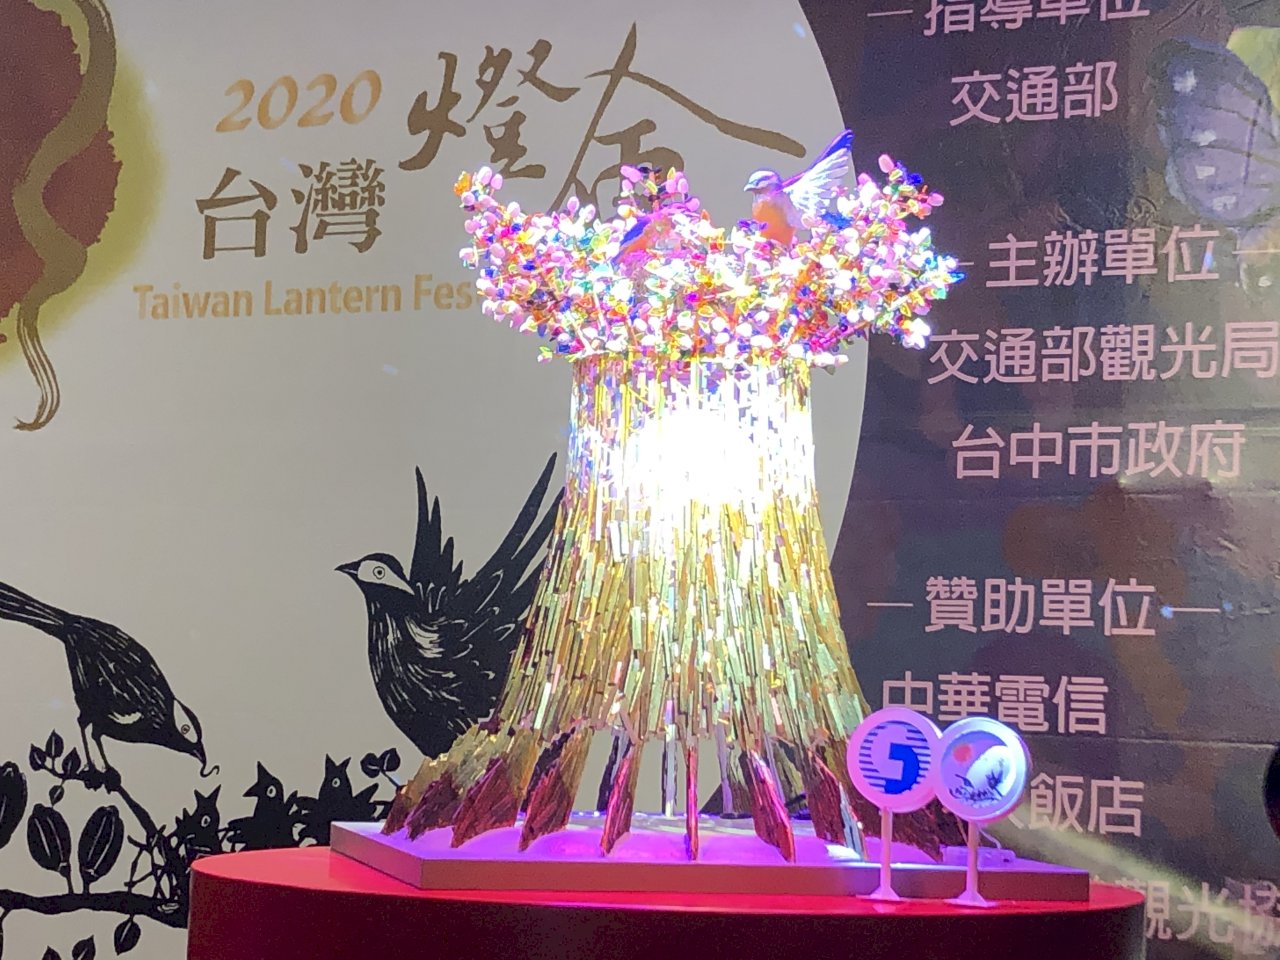 2020台灣燈會2/8登場 主燈小提燈今搶先曝光